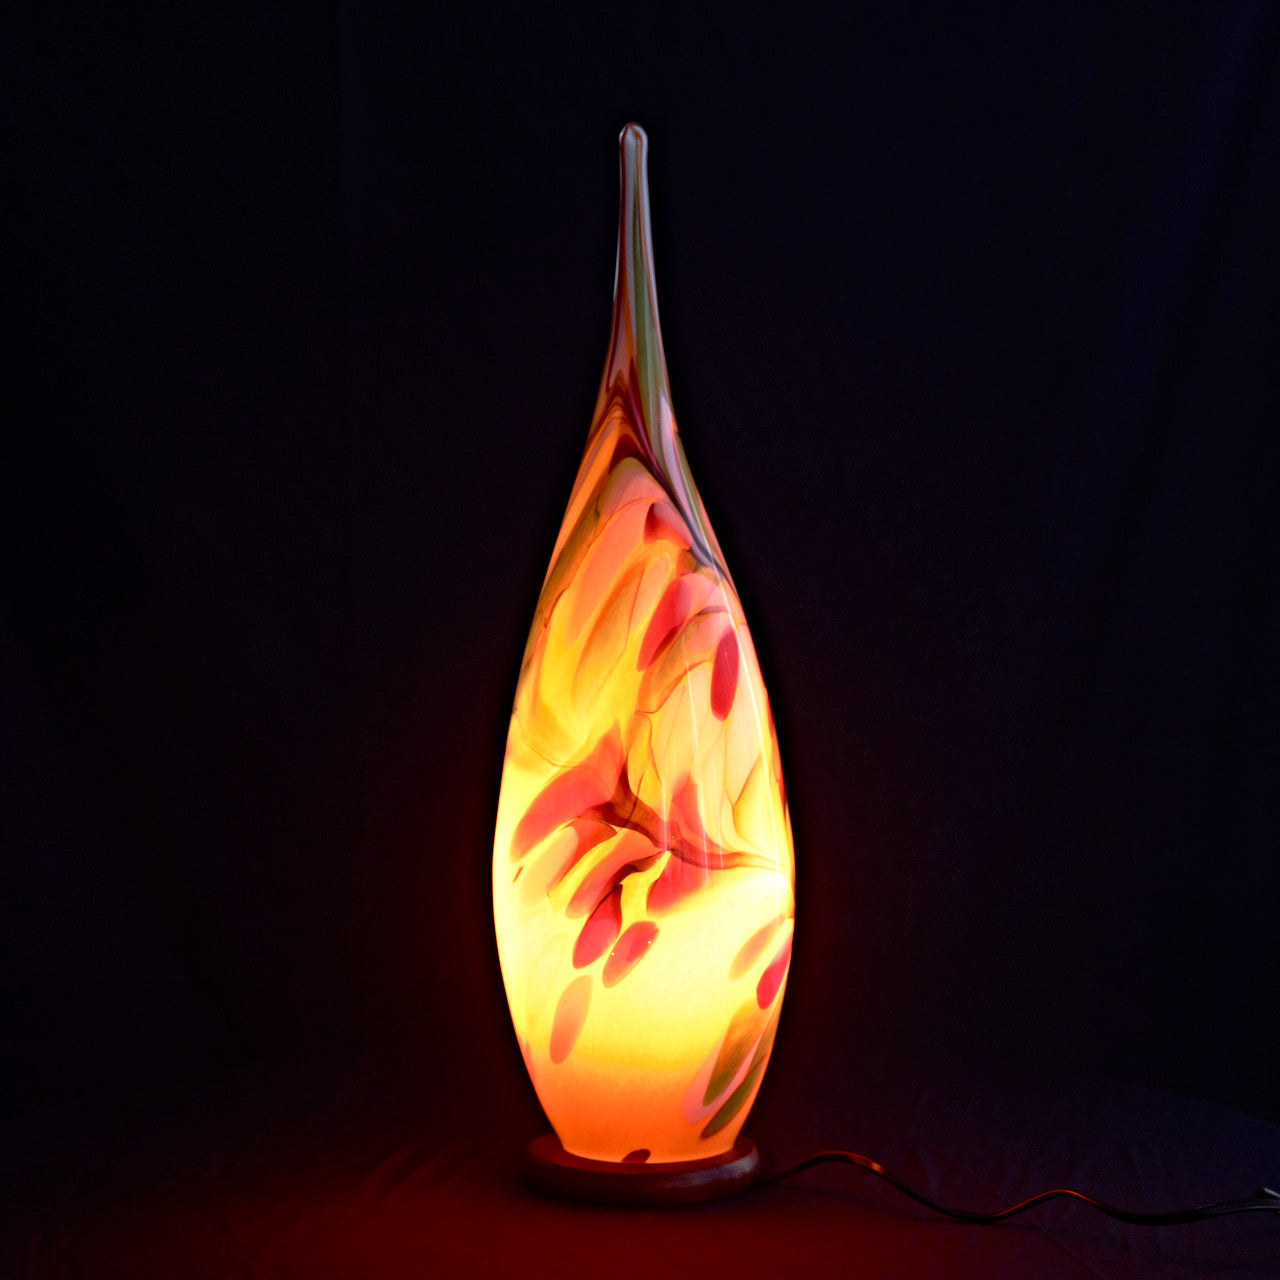 Tischlampe Beleuchtung Lichtquelle Flamme Dekoration Glas Kegel 25cm LED bunt